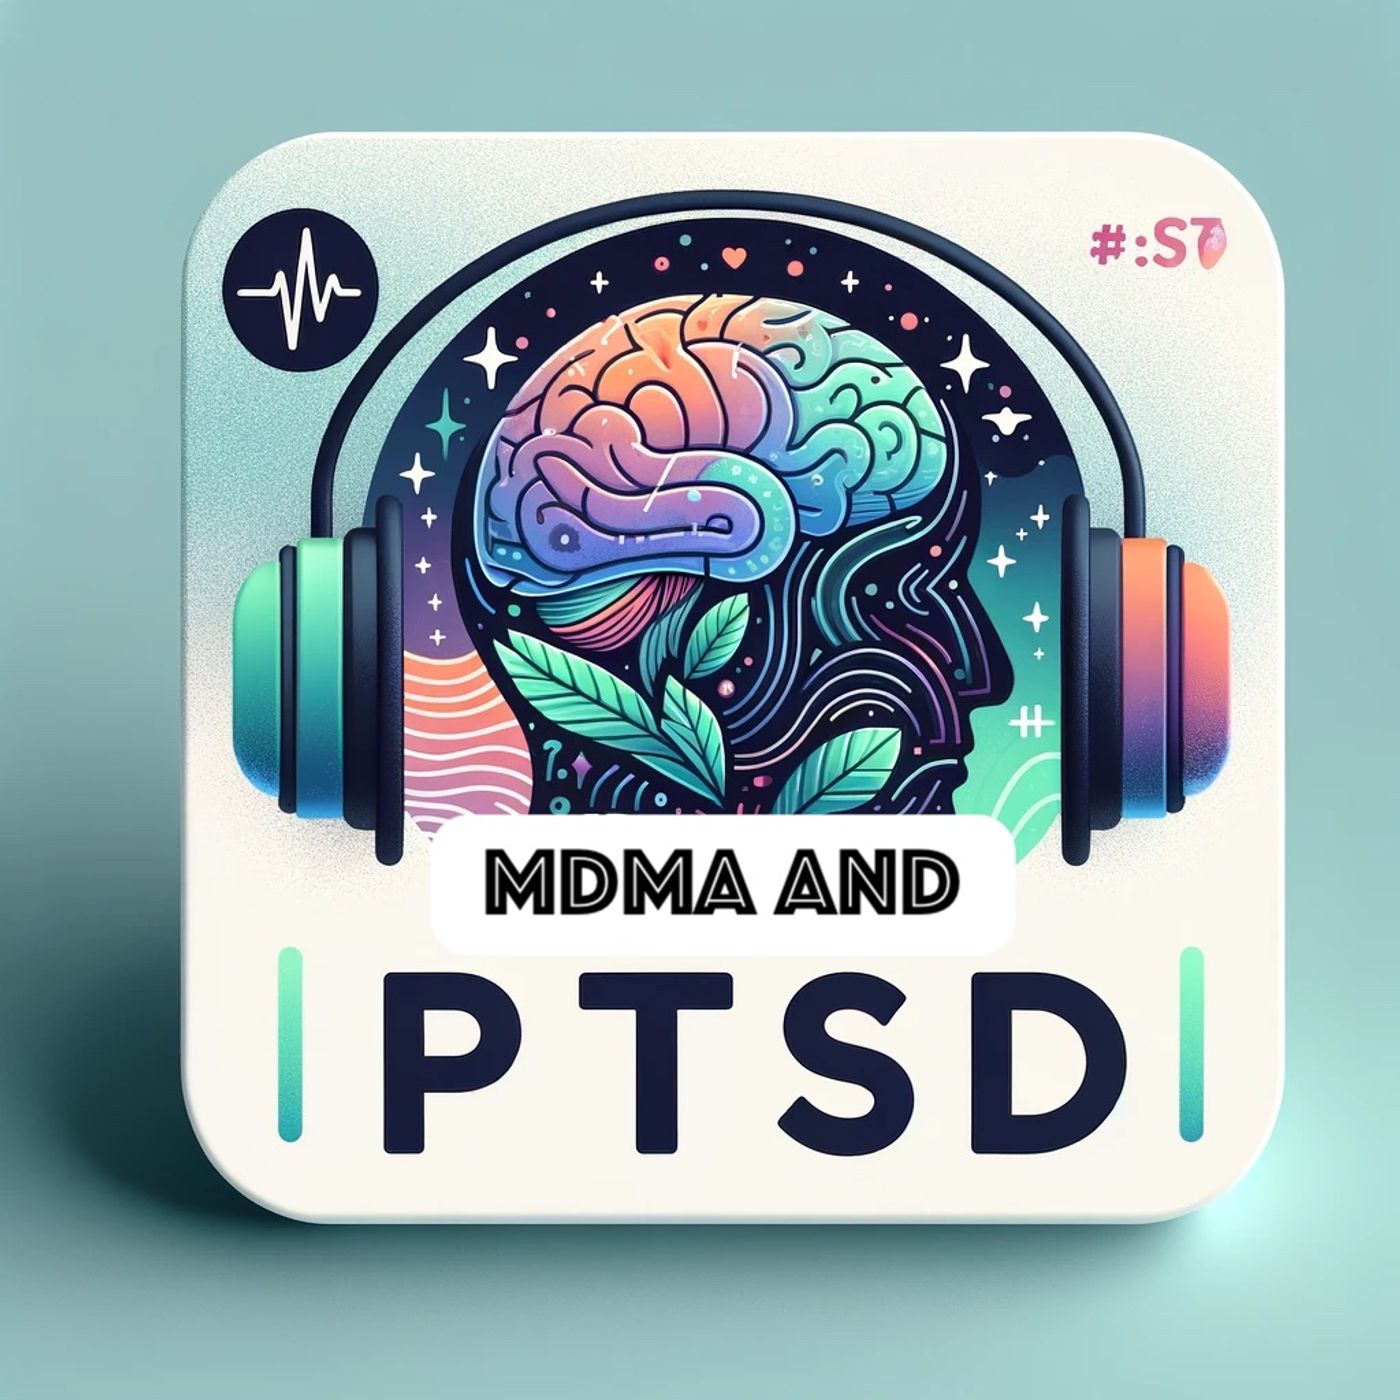 MDMA and PTSD Image